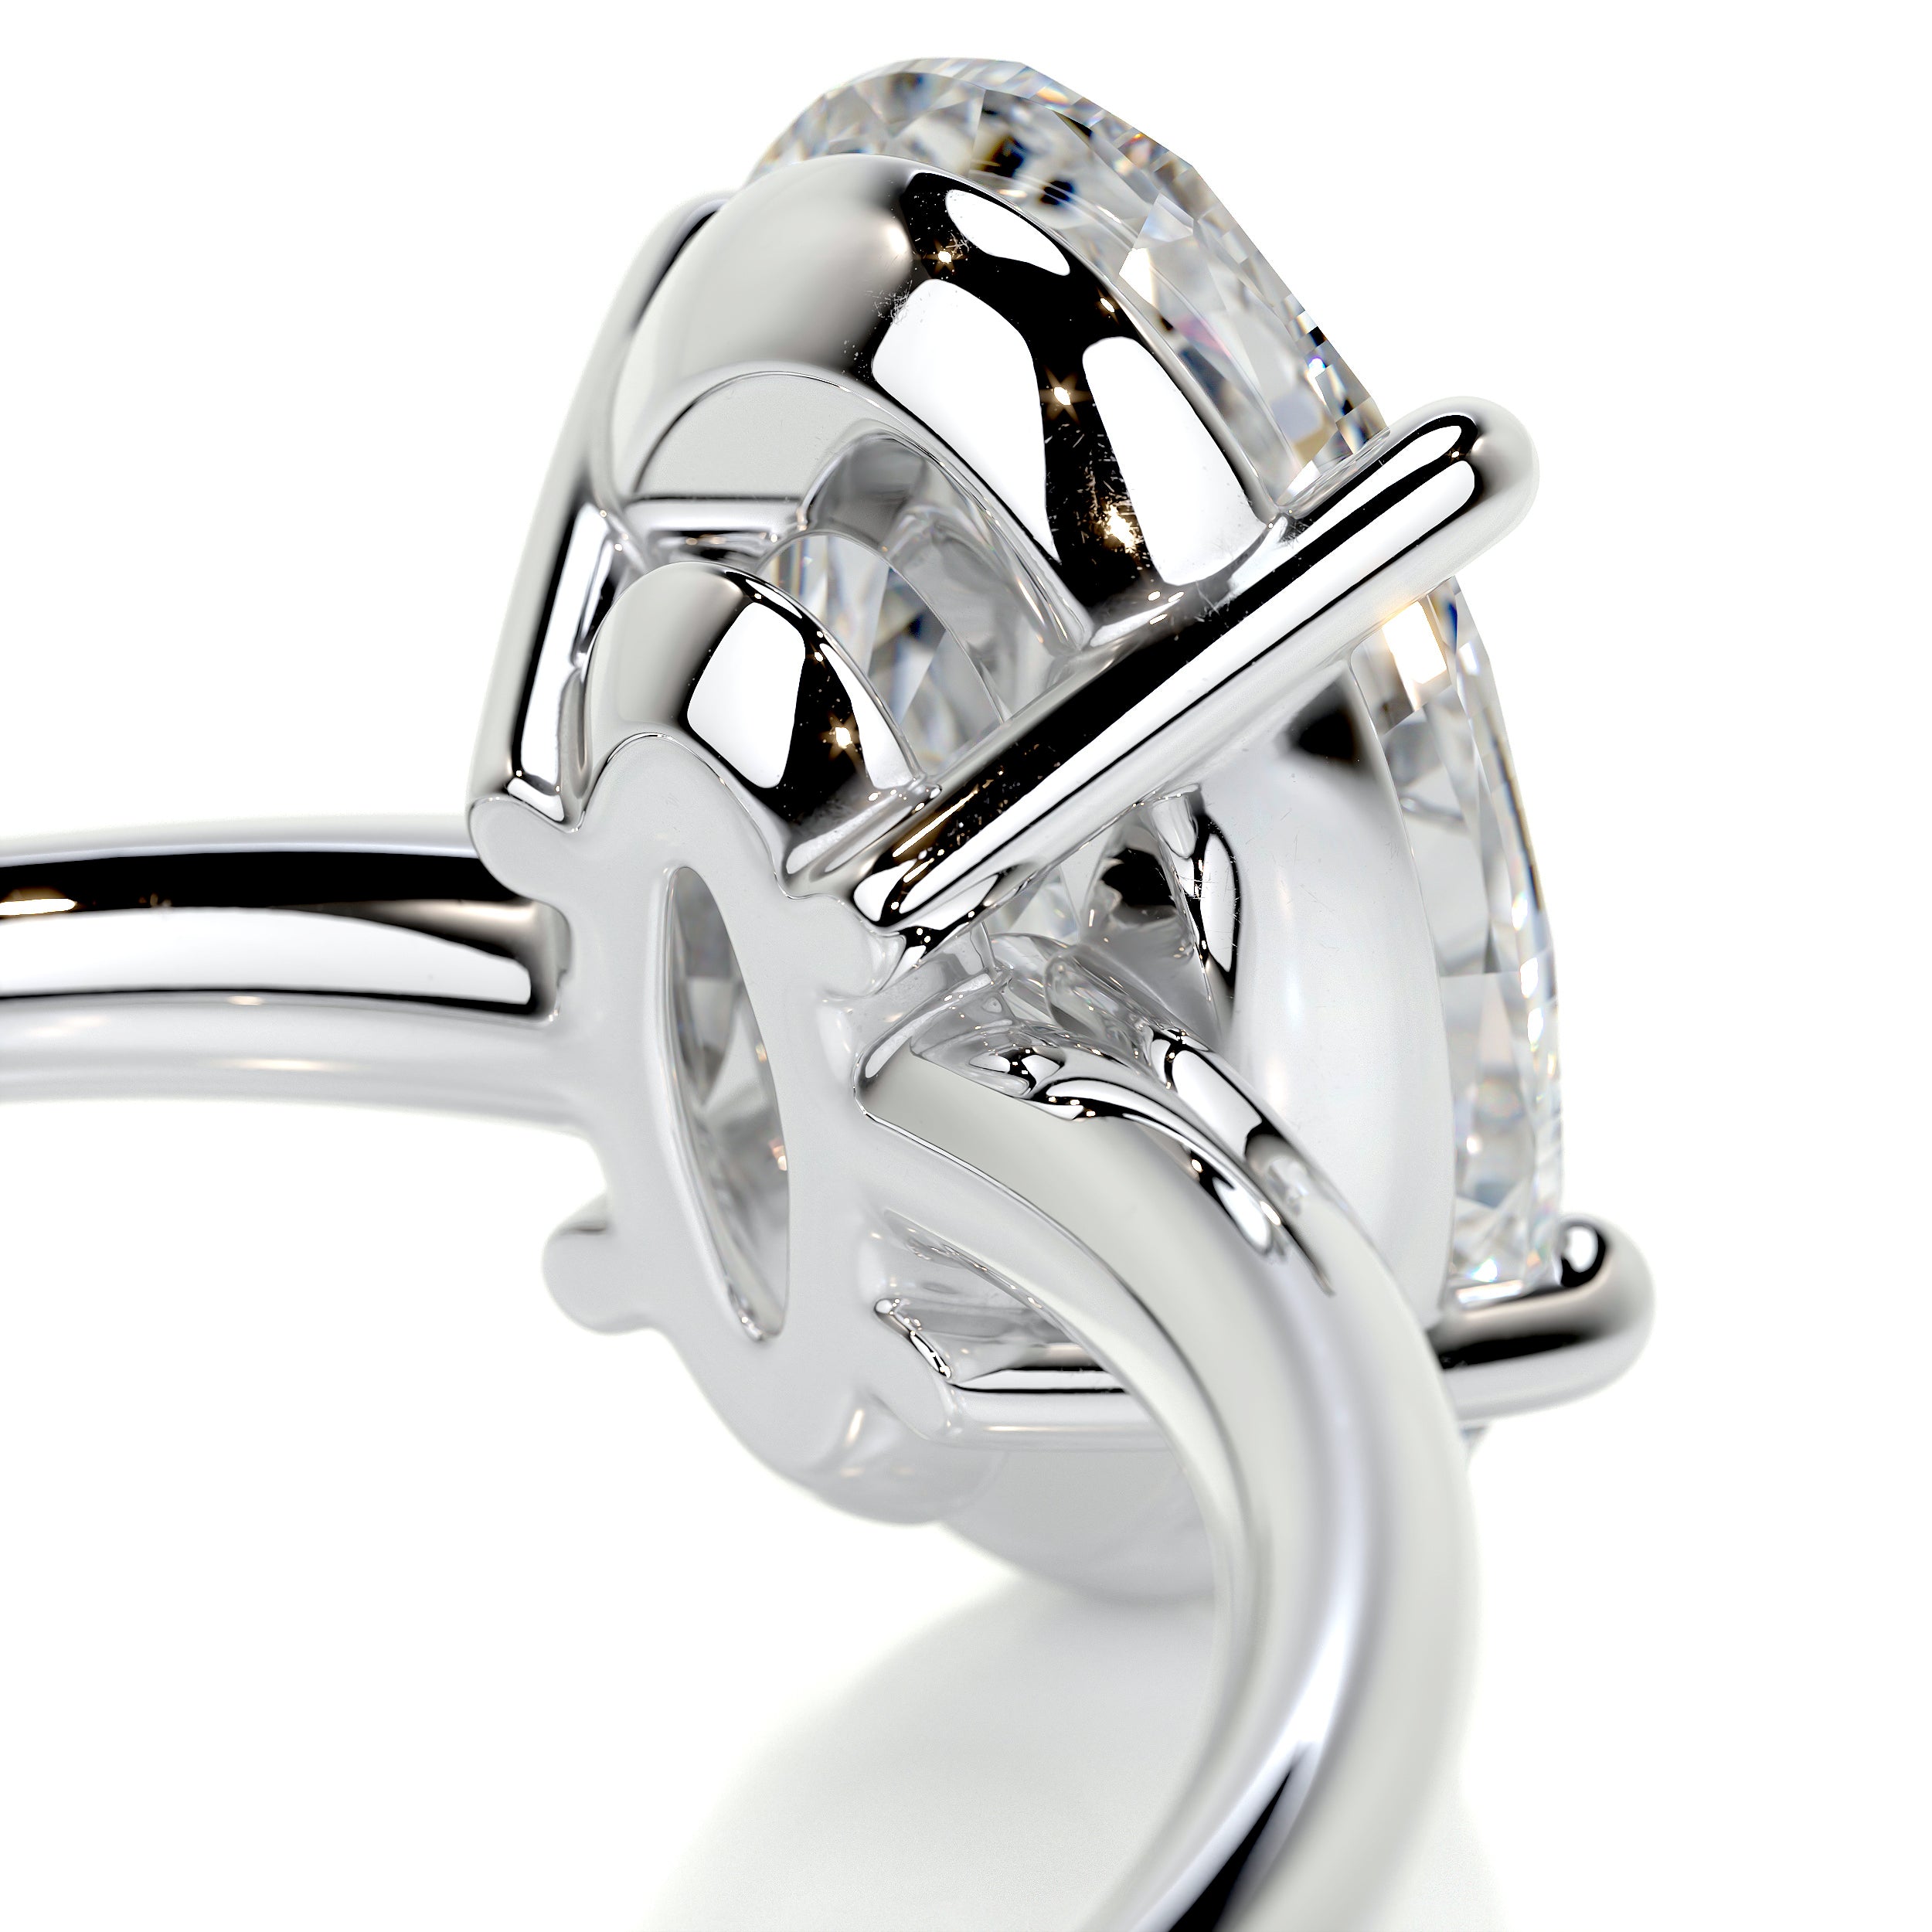 Adaline Diamond Engagement Ring   (2 Carat) -Platinum